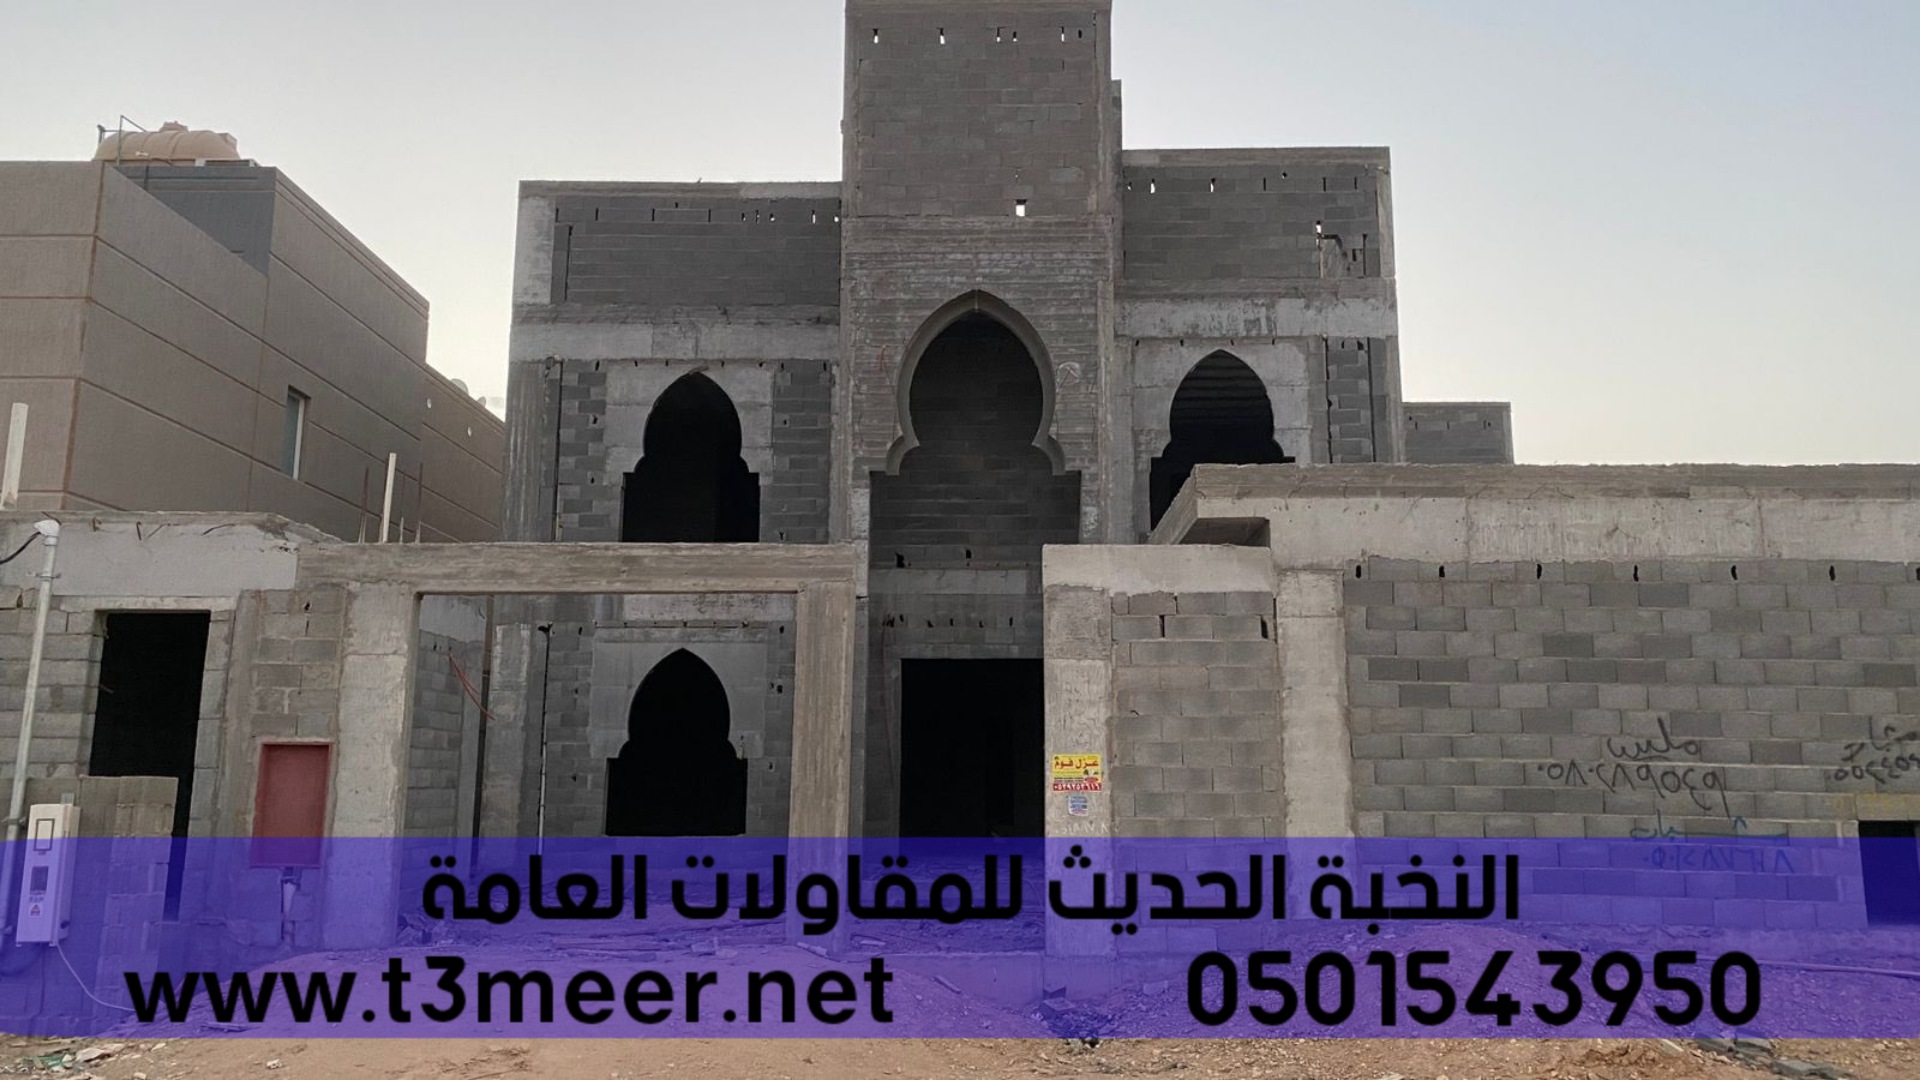 تشطيب منازل و بناء عظم في الرياض , 0501543950 P_2431sh7w67